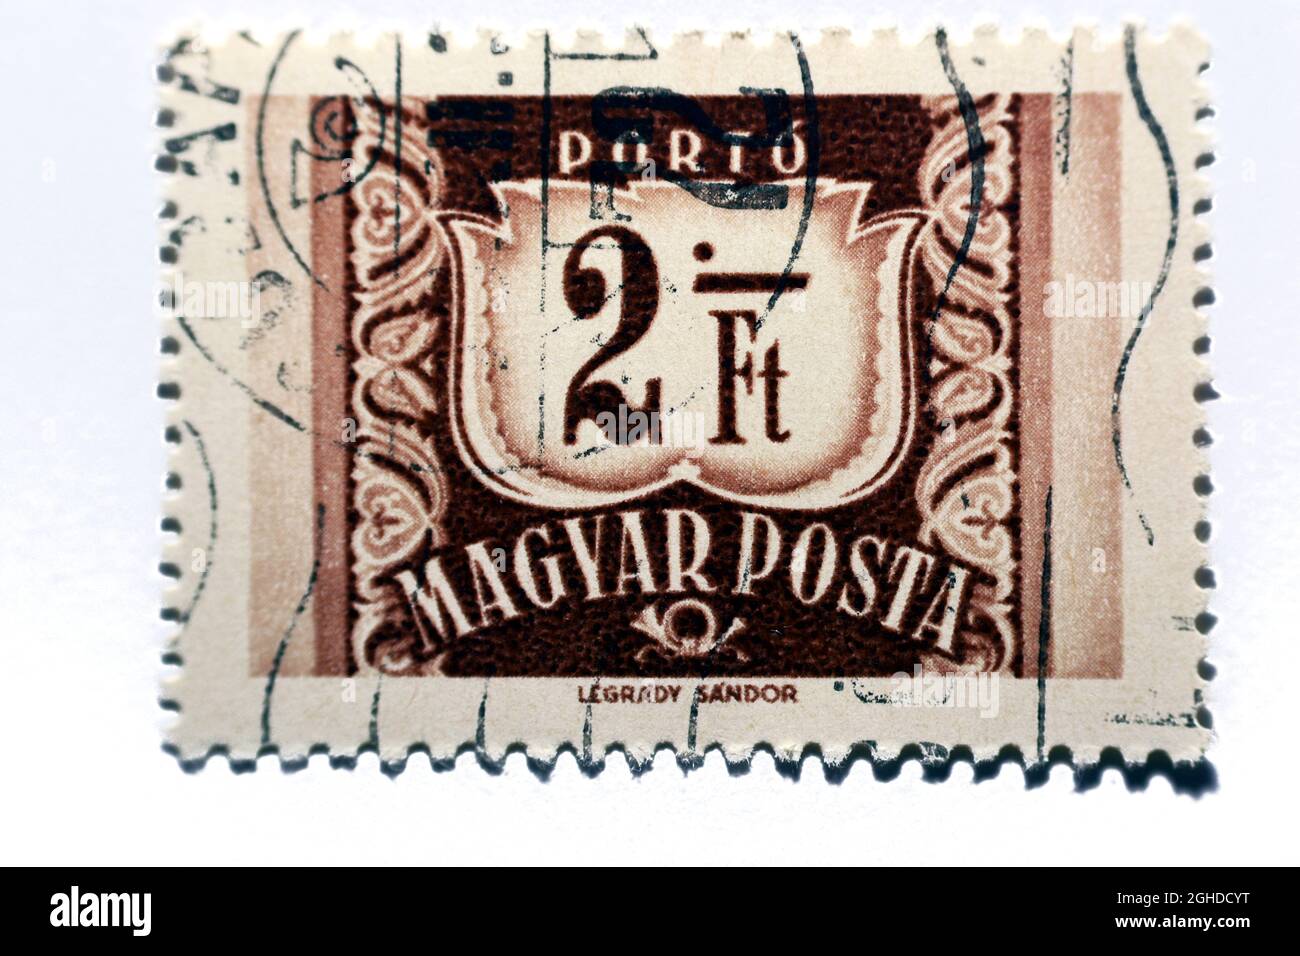 Un ancien timbre-poste imprimé en Hongrie montre la valeur 2 ft et le texte Magyar Posta vers 1958, isolé sur fond blanc, anciens timbres rétro vintage Banque D'Images